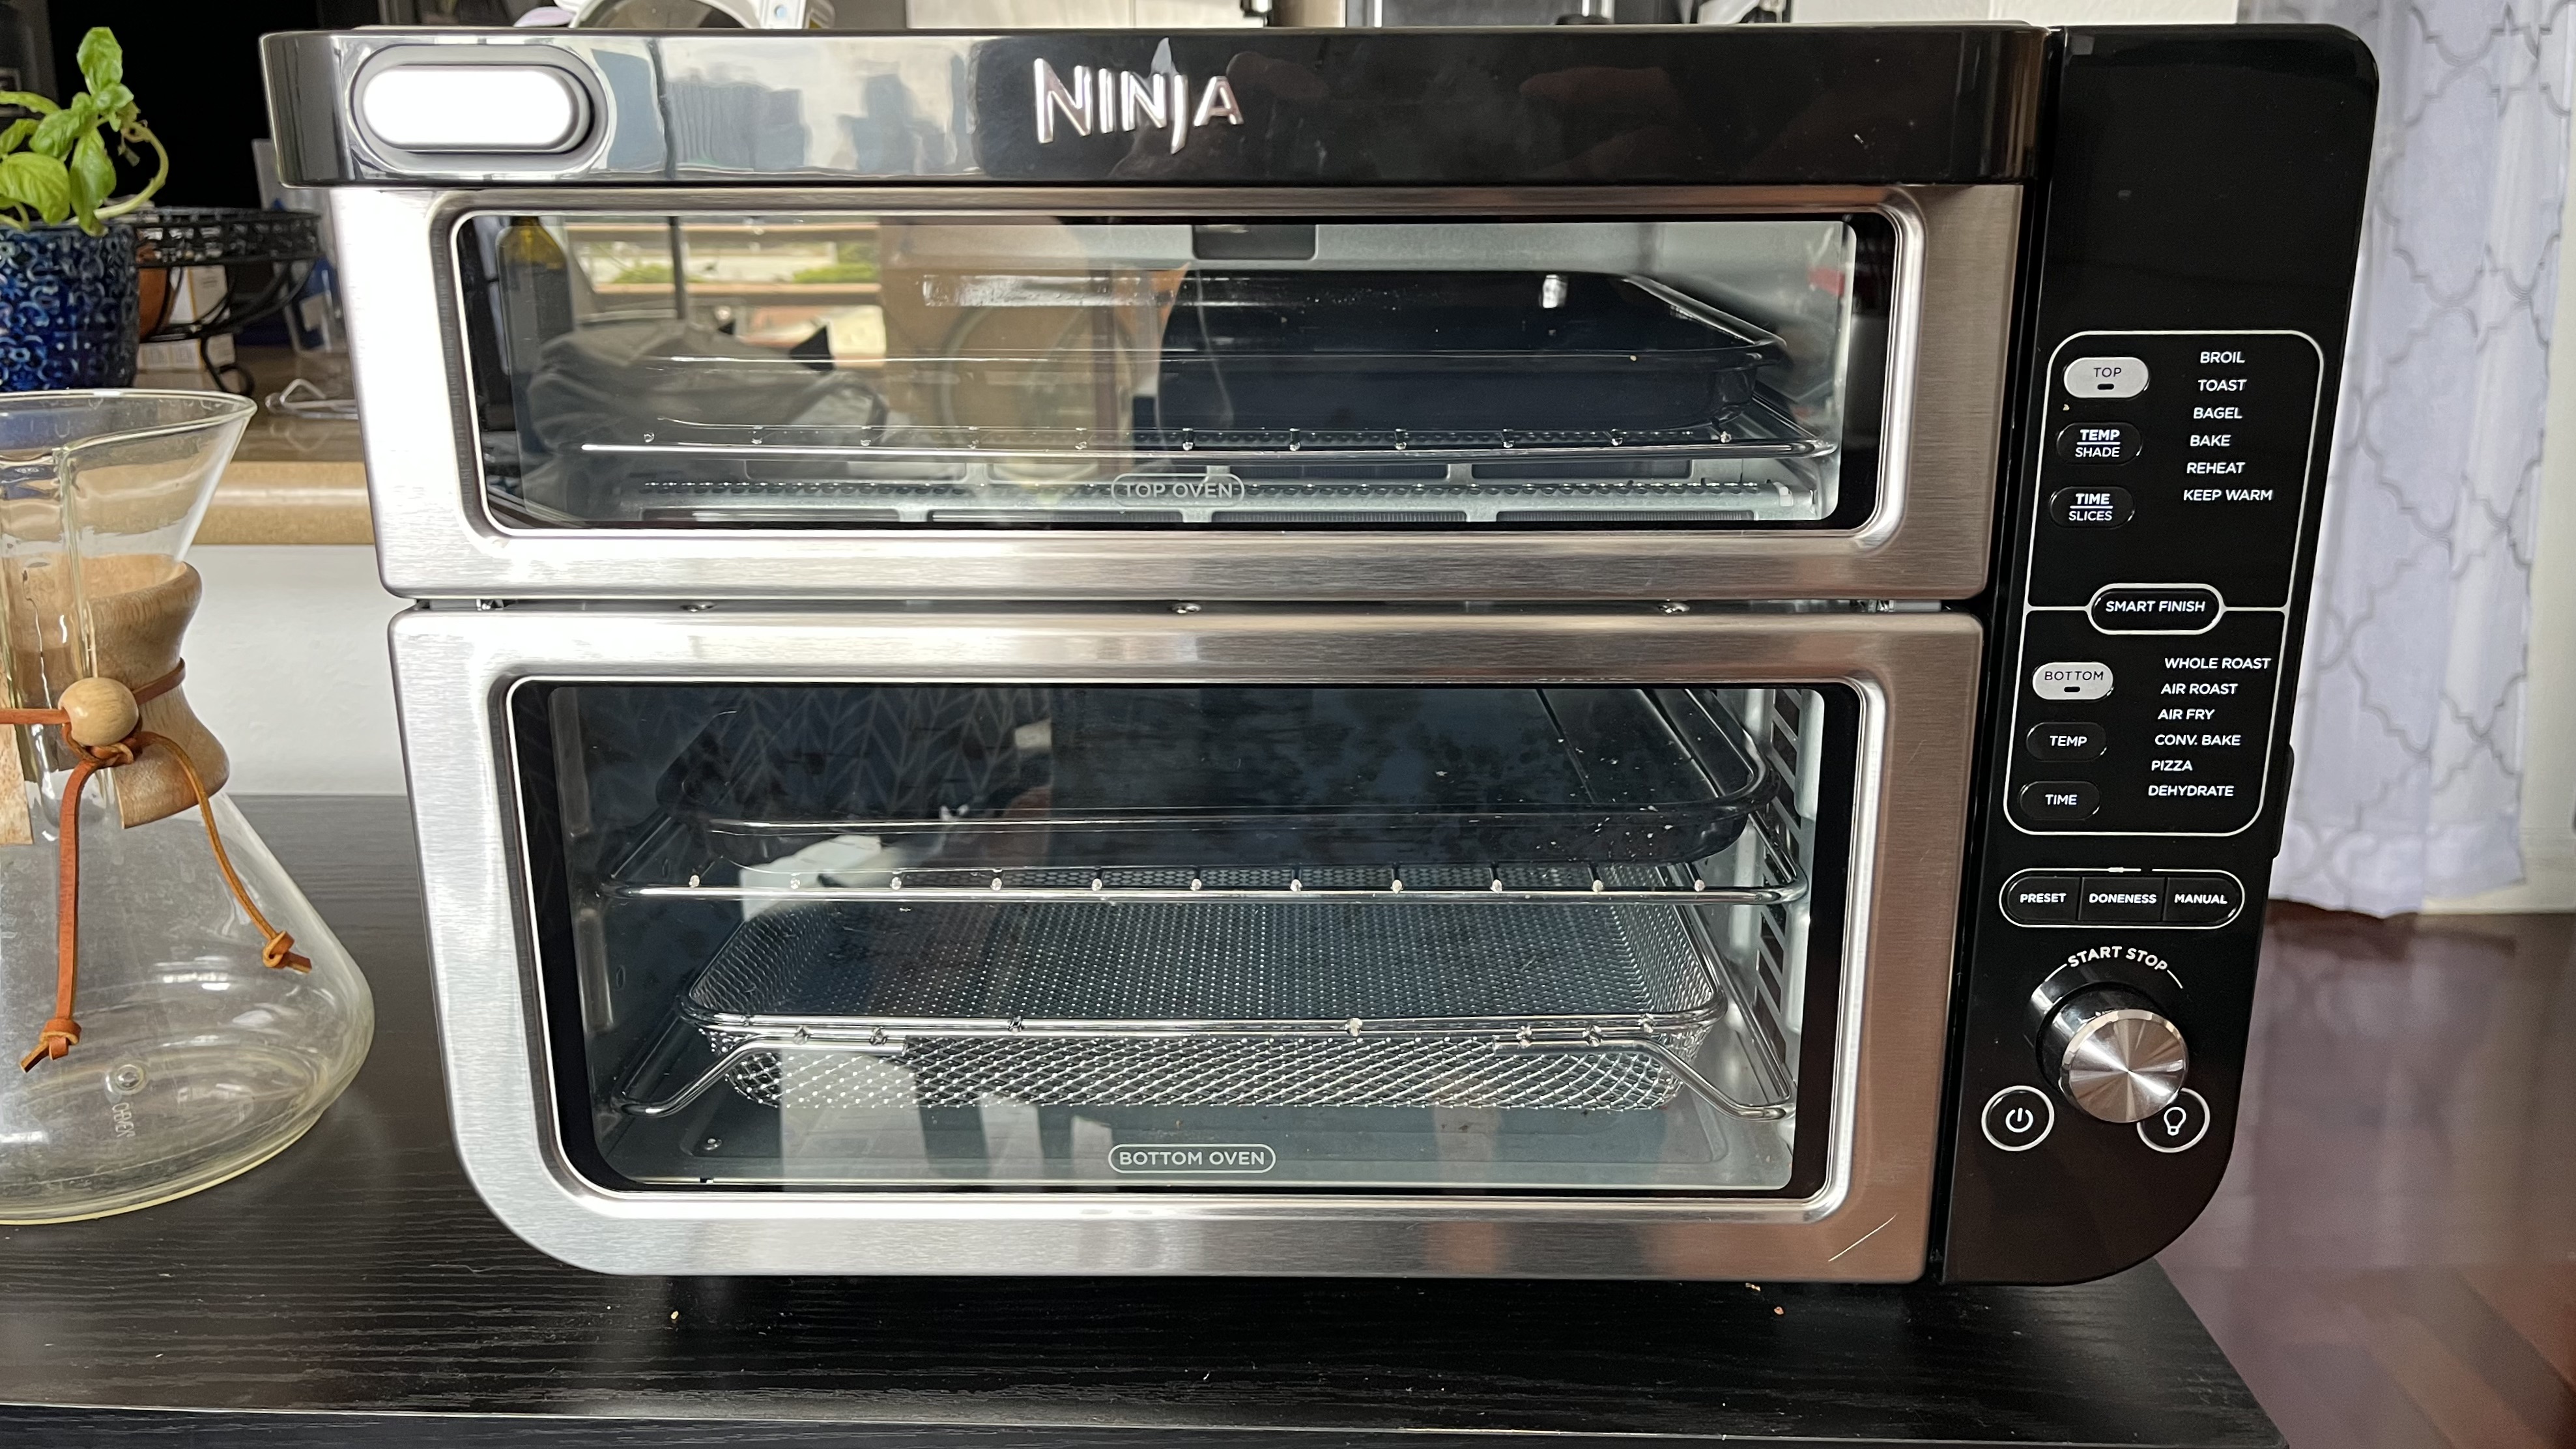 Ninja Smart Double Oven With FlexDoor [Review]